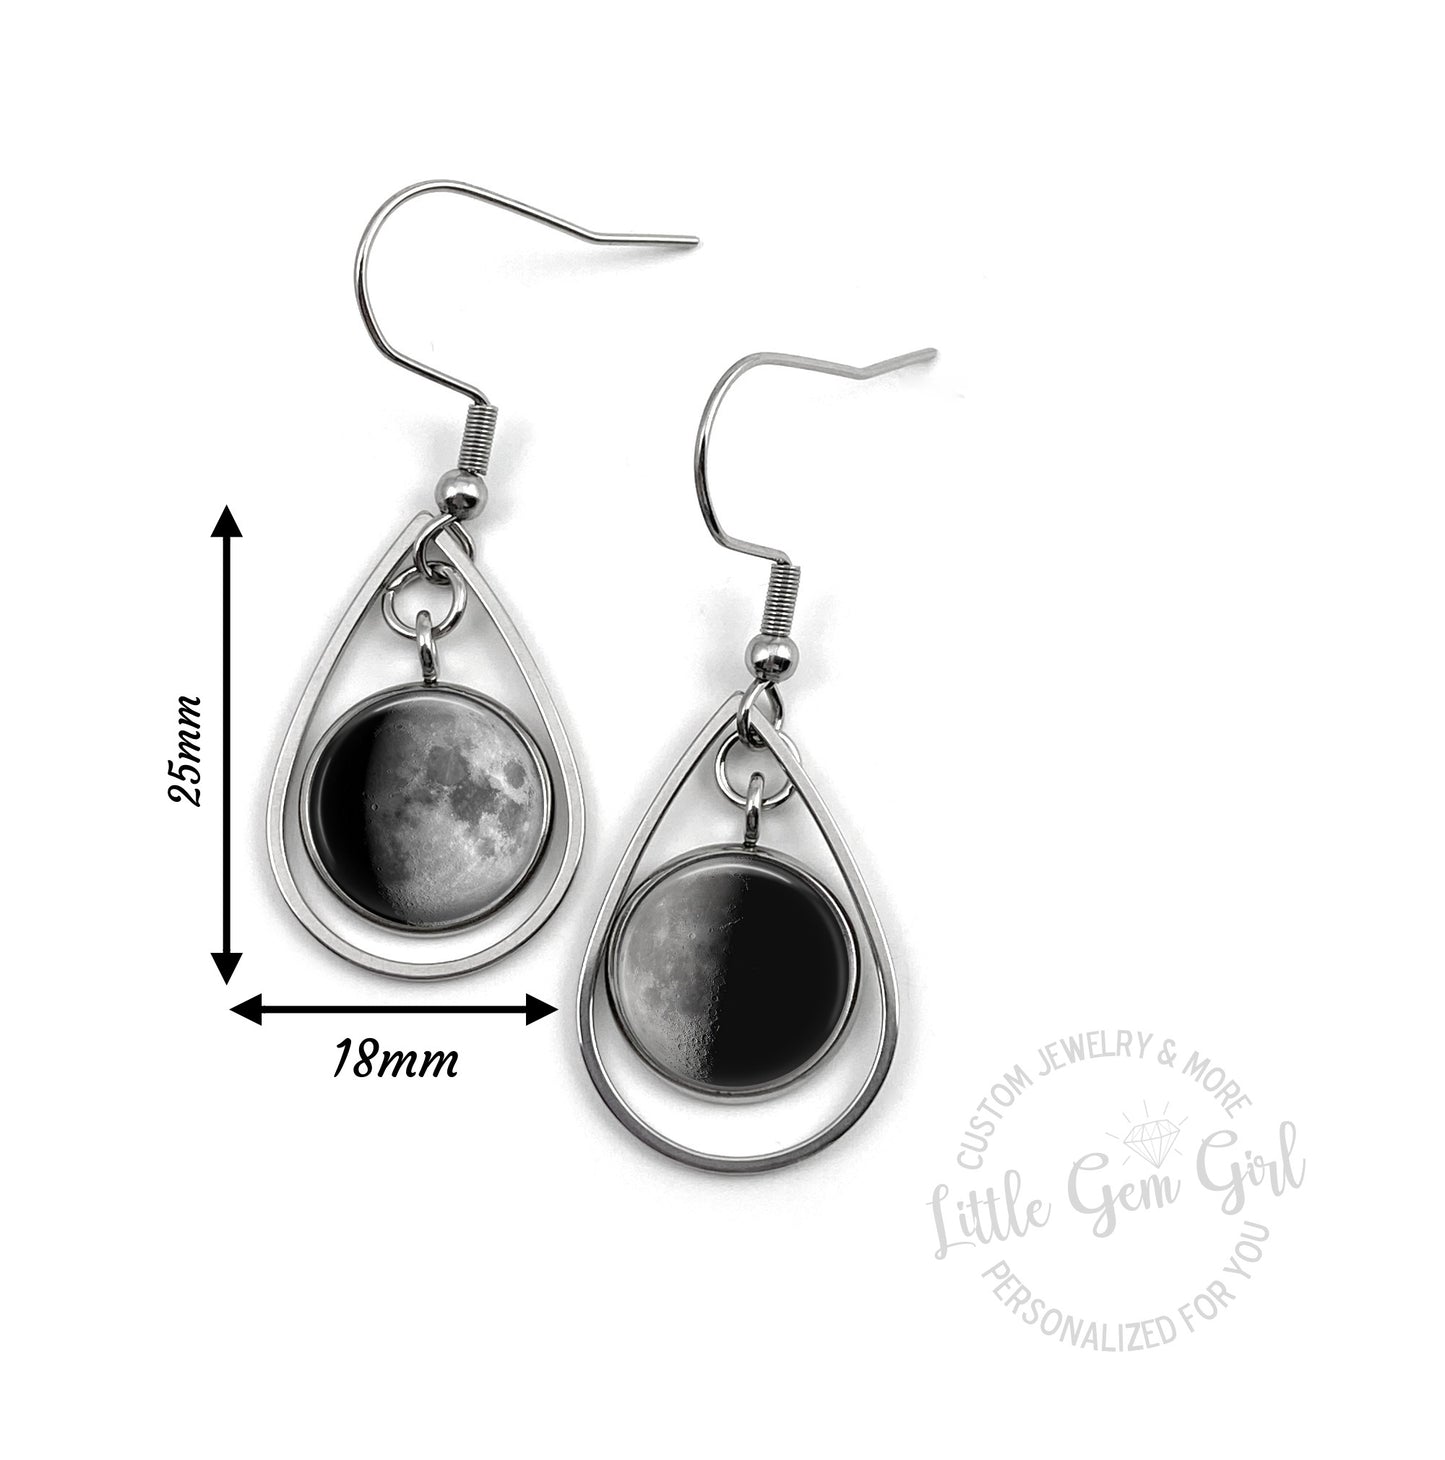 Custom Lunar Phase Birth Moon Earrings - Glow in the Dark Stainless Steel Teardrop - Hypoallergenic Nickel Free